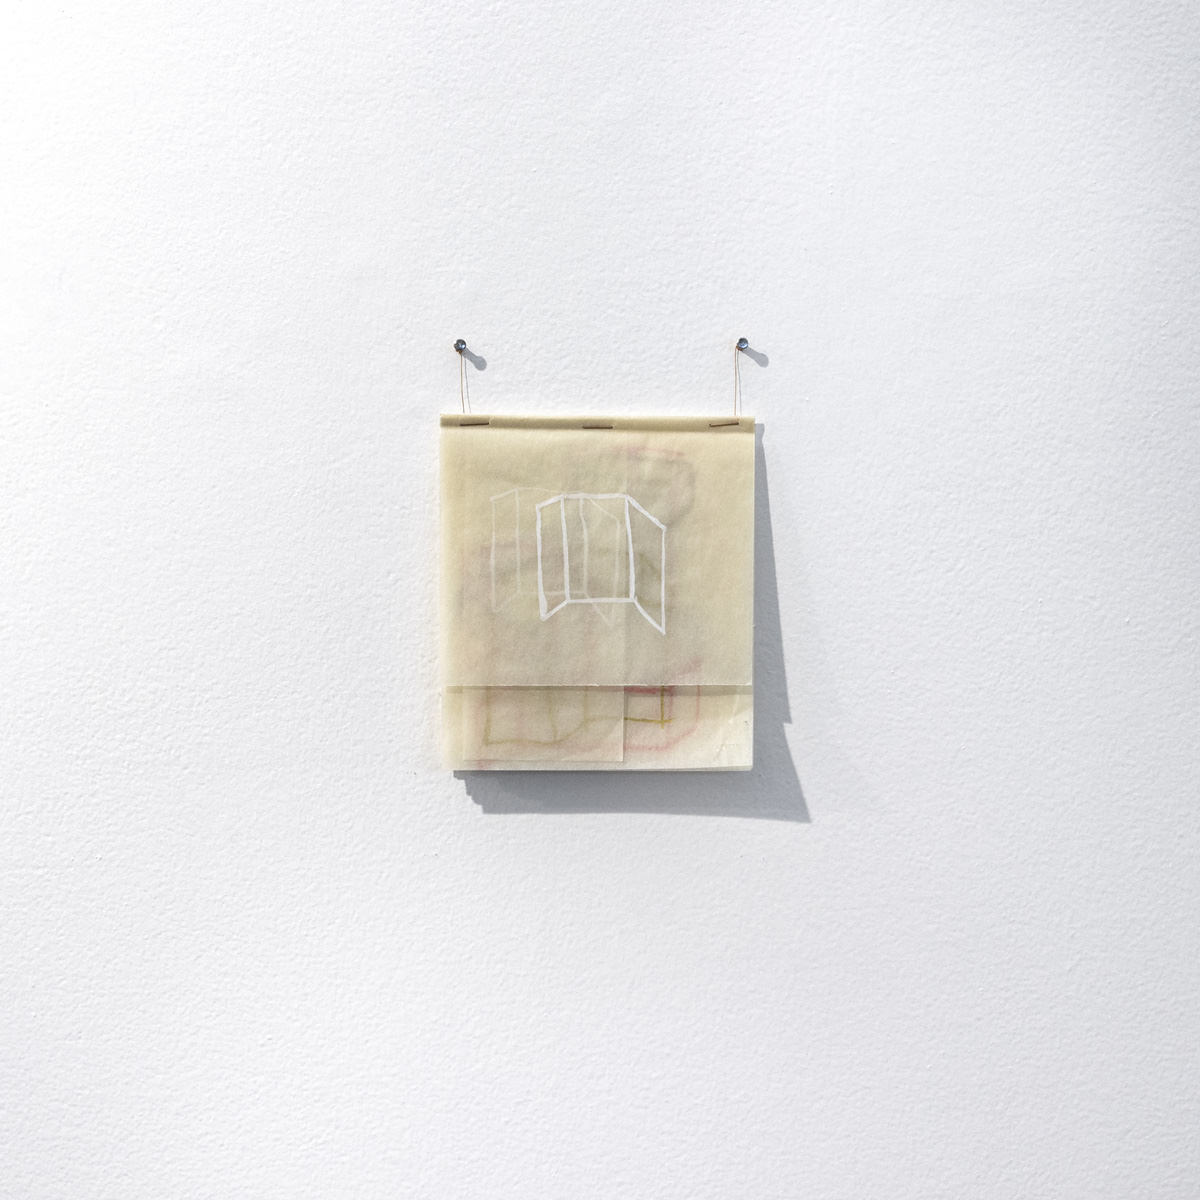 Φλάβια Ριμπέιρο, Σχέδιο, 2019 - γκουάς και χάλκινη σκόνη σε ένα διπλό φύλλο χαρτιού - 28,7 x 21 cm. Φωτογραφίες: Αποκάλυψη.